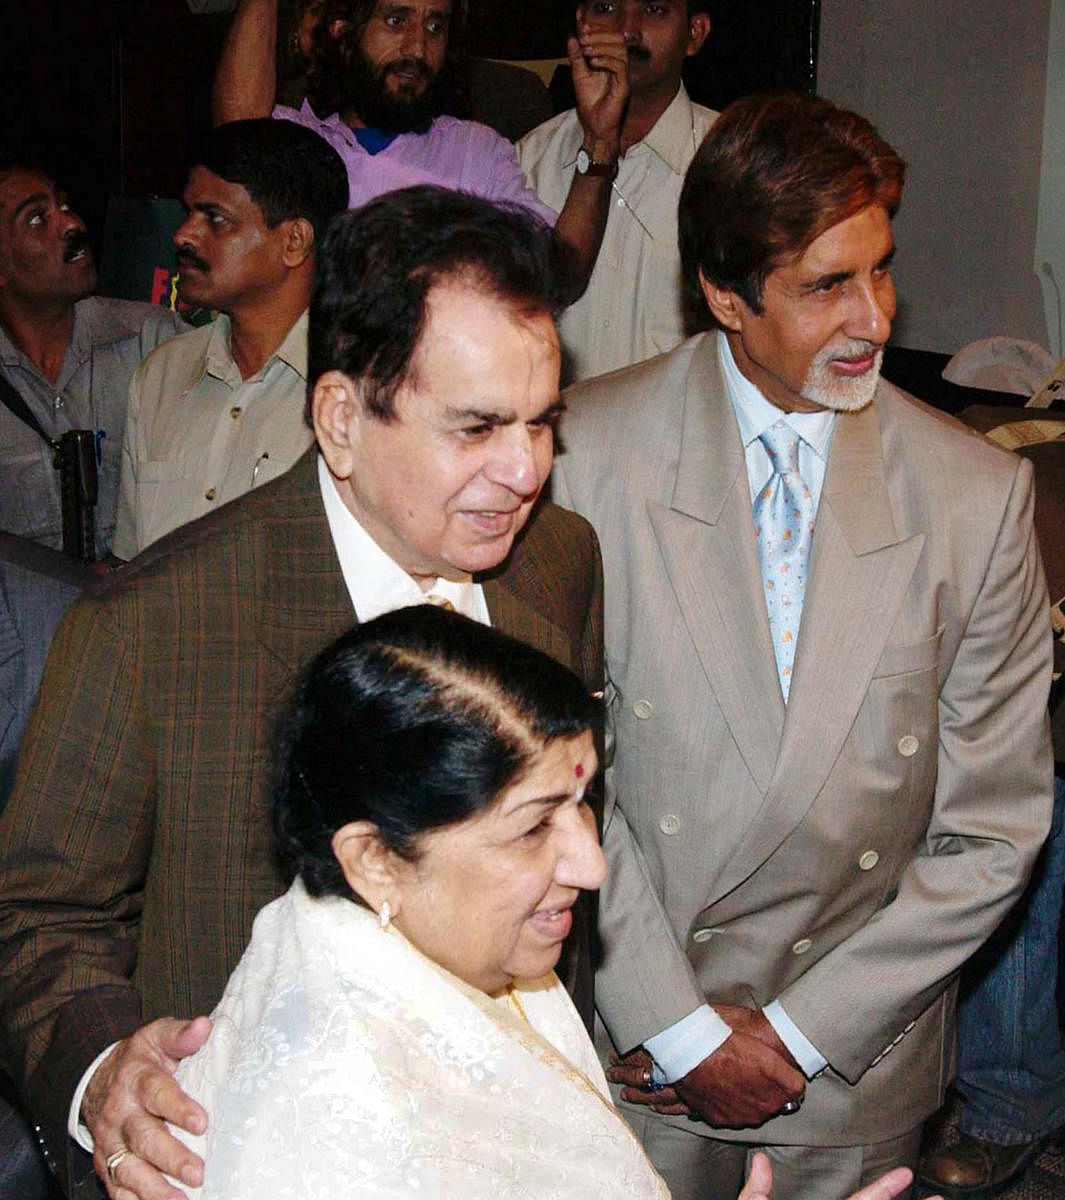 2005ರ ಜನವರಿ 27ರಂದು ಮುಂಬೈನಲ್ಲಿ ನಡೆದ ಫಿಲ್ಮ್‌ಫೇರ್ ಕಾರ್ಯಕ್ರಮದಲ್ಲಿ ಬಾಲಿವುಡ್ ಹಿರಿಯ ನಟರಾದ ದಿಲೀಪ್ ಕುಮಾರ್, ಅಮಿತಾಬ್ ಬಚ್ಚನ್ ಅವರೊಂದಿಗೆ ಲತಾ ಮಂಗೇಶ್ಕರ್‌